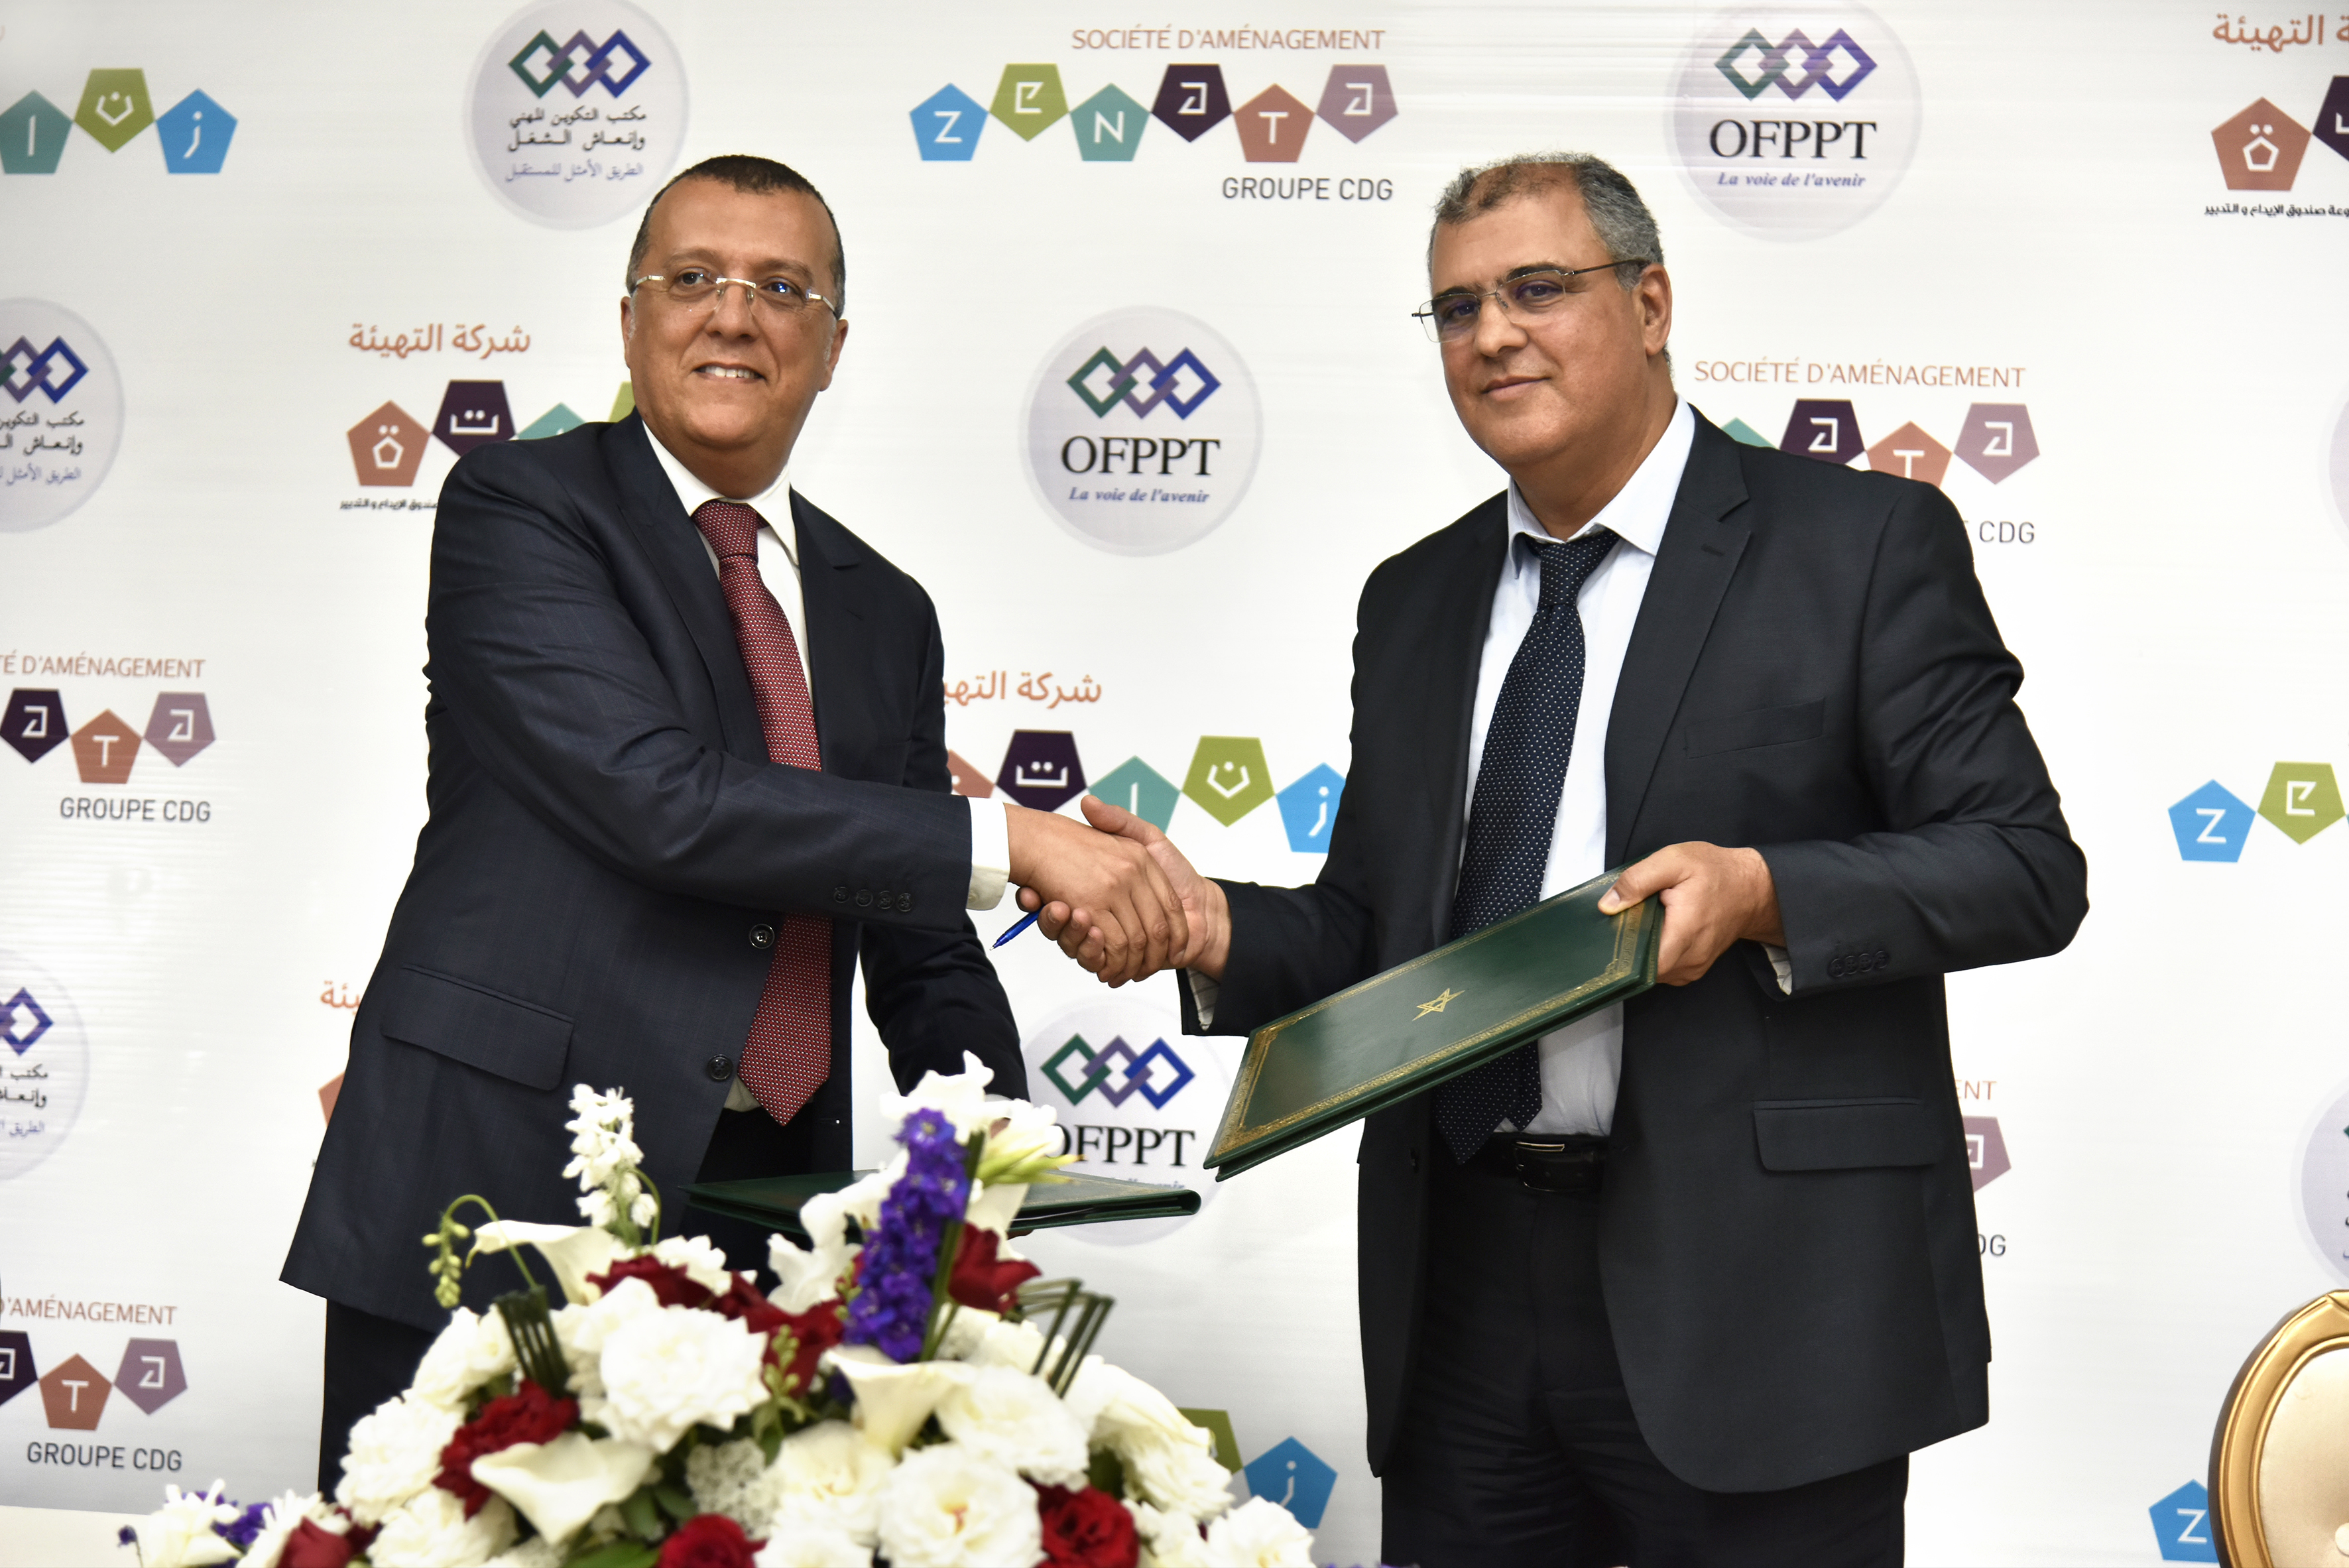 Signature de conventions de partenariat stratégique entre la Société d’aménagement Zenata et l’OFPPT